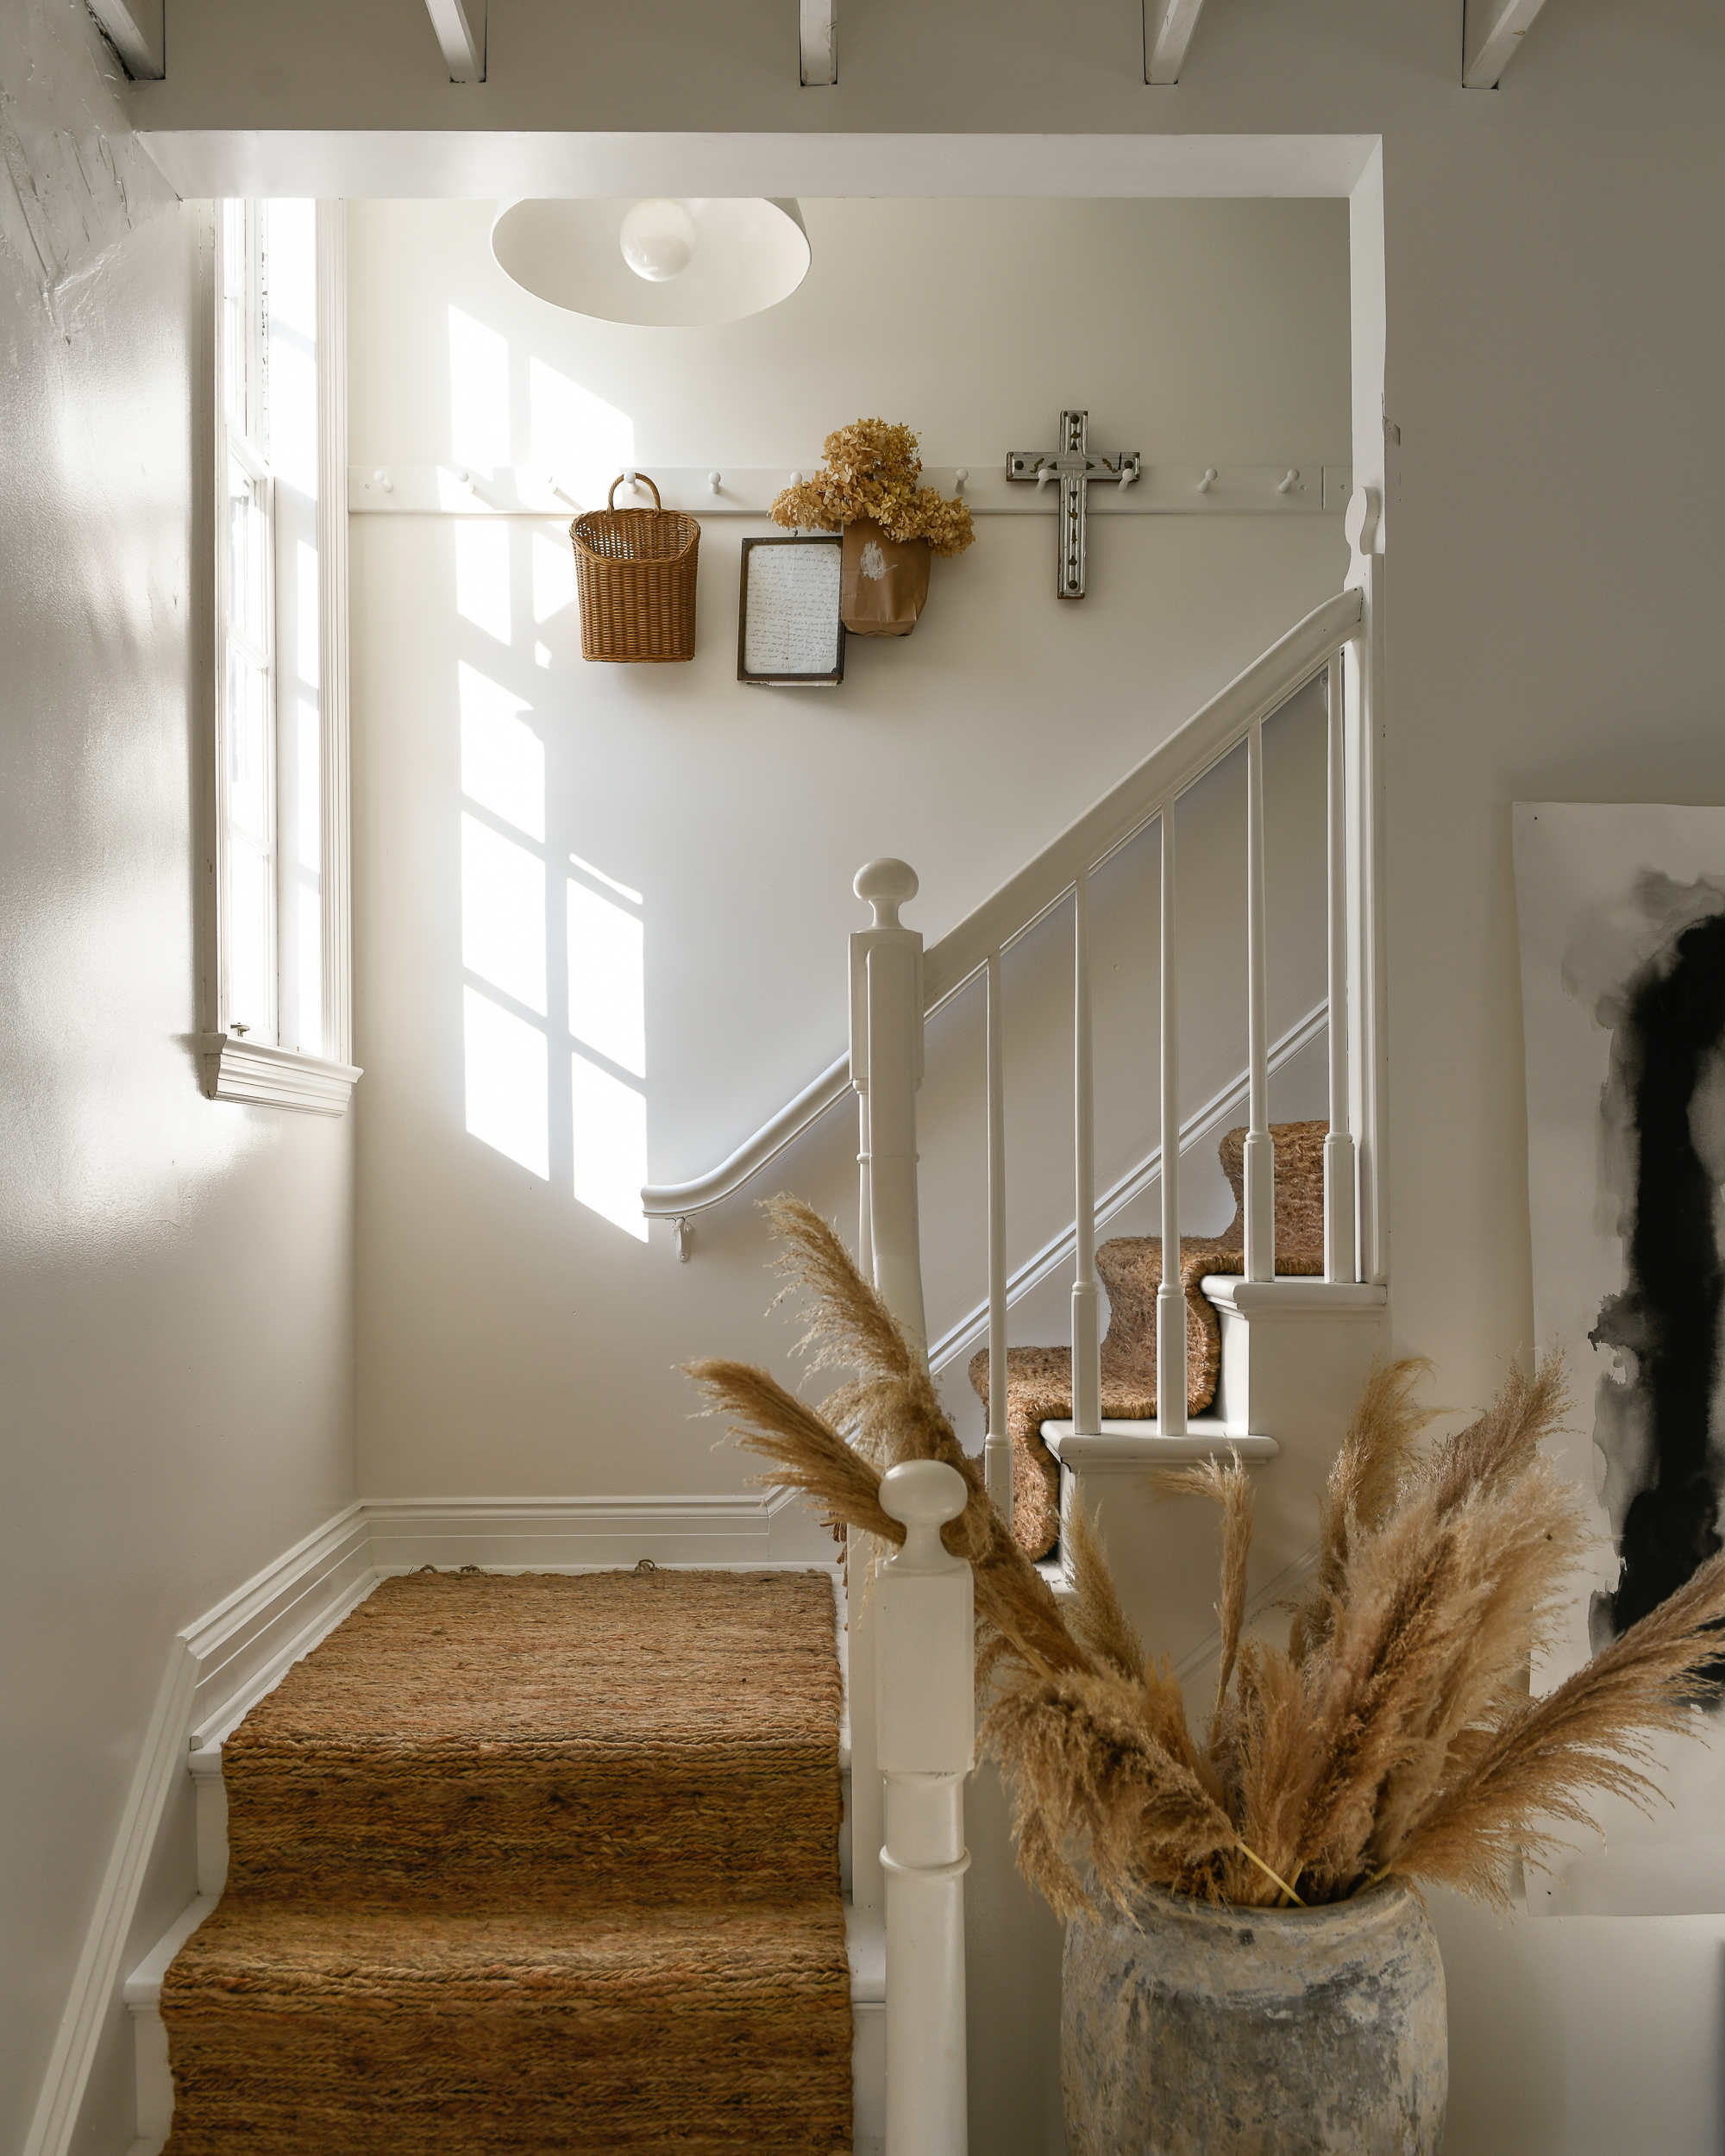 L'escalier de Leanne Ford, dont les murs sont peints en Blanc naturel et agrémentés d'accents bruns